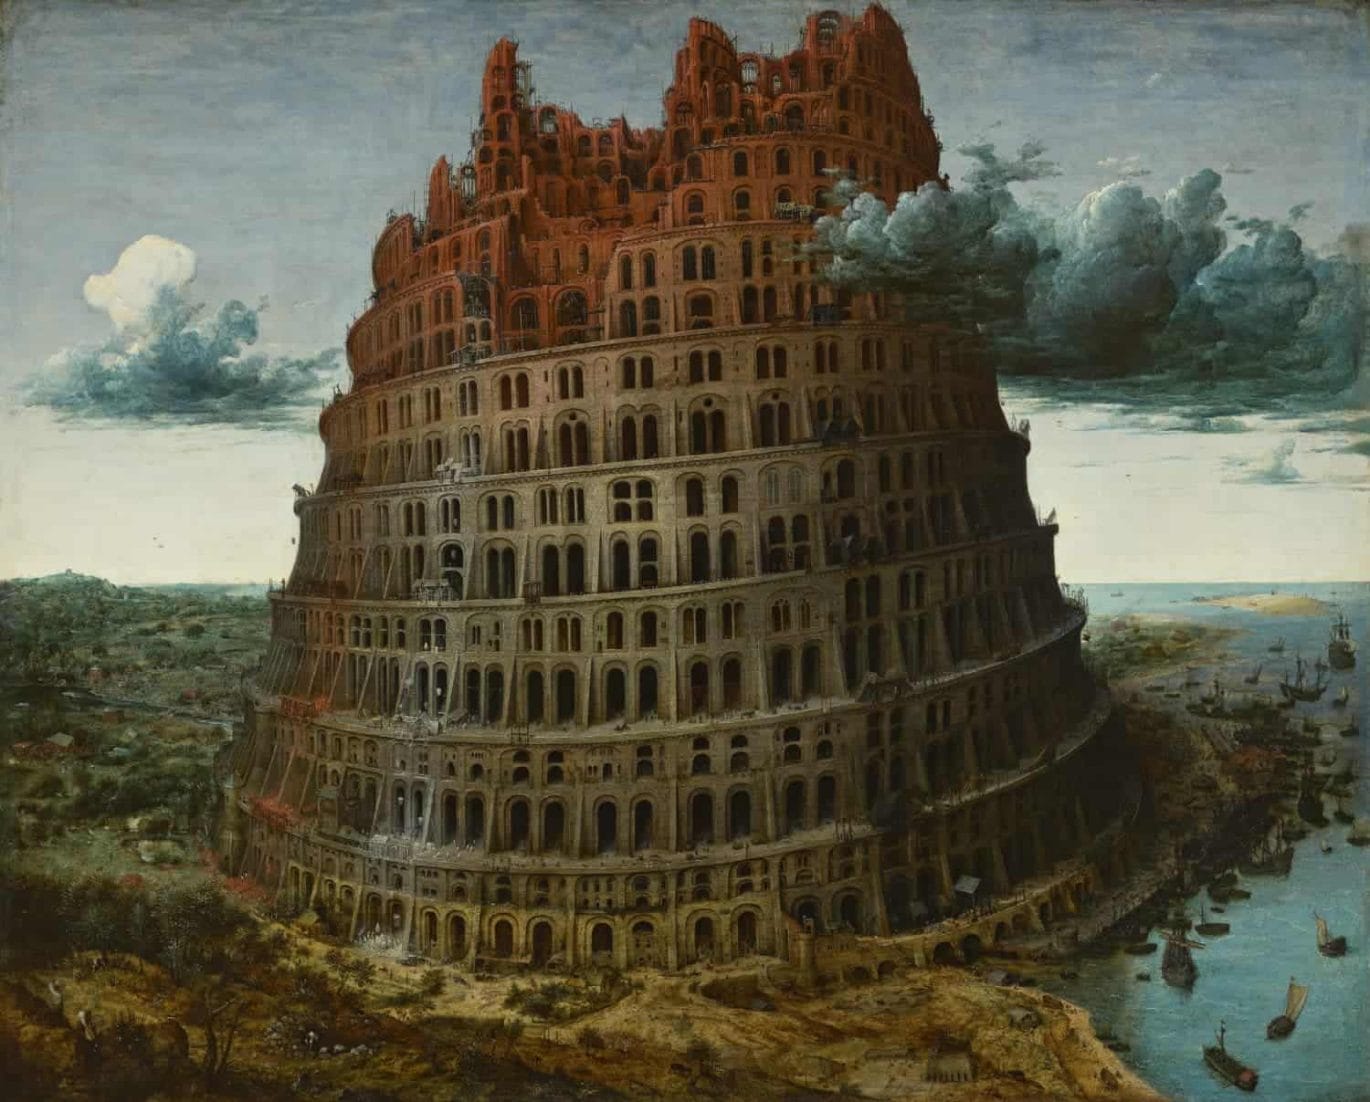 Pieter Bruegel, ‘De toren van Babel’, circa 1568, Museum Boijmans Van Beuningen, Rotterdam. Verworven met de verzameling van D.G. van Beuningen